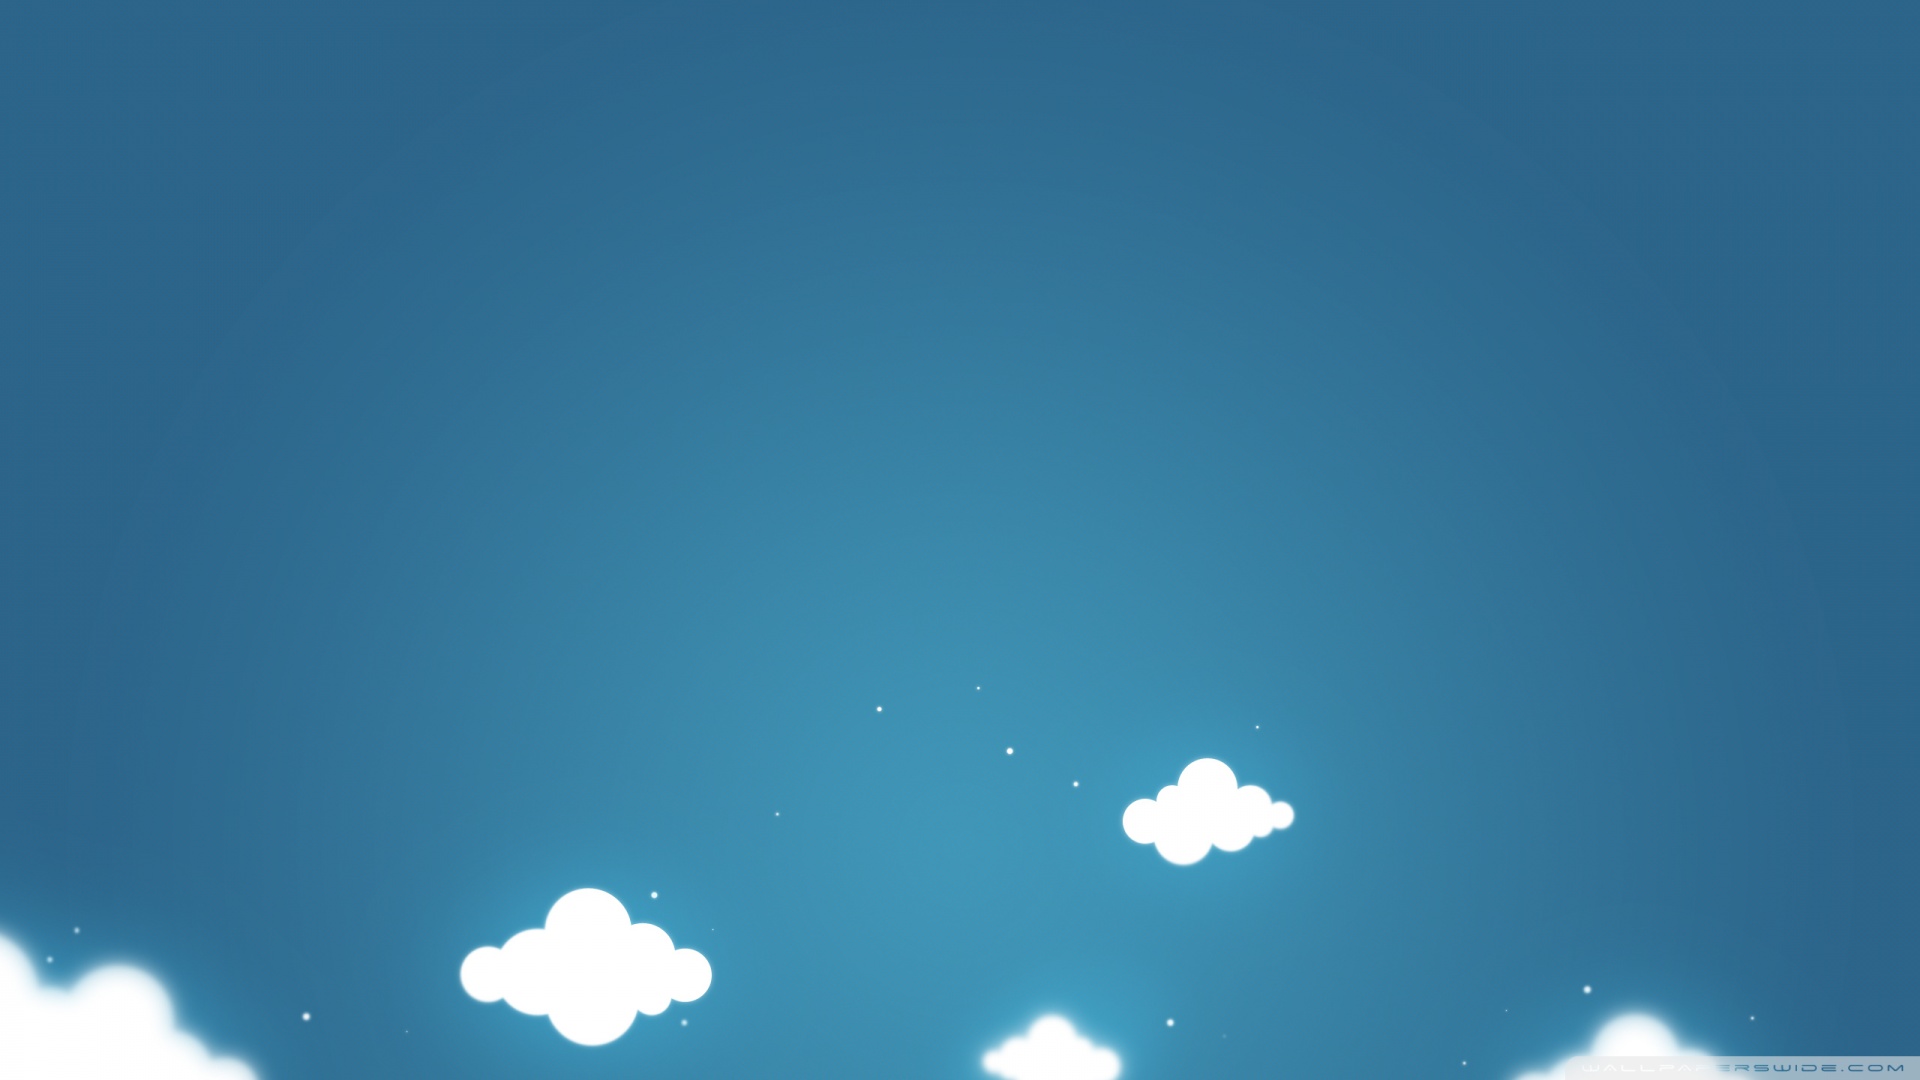 cartoon_clouds_and_blue_sky-wallpaper-1920x1080.jpg